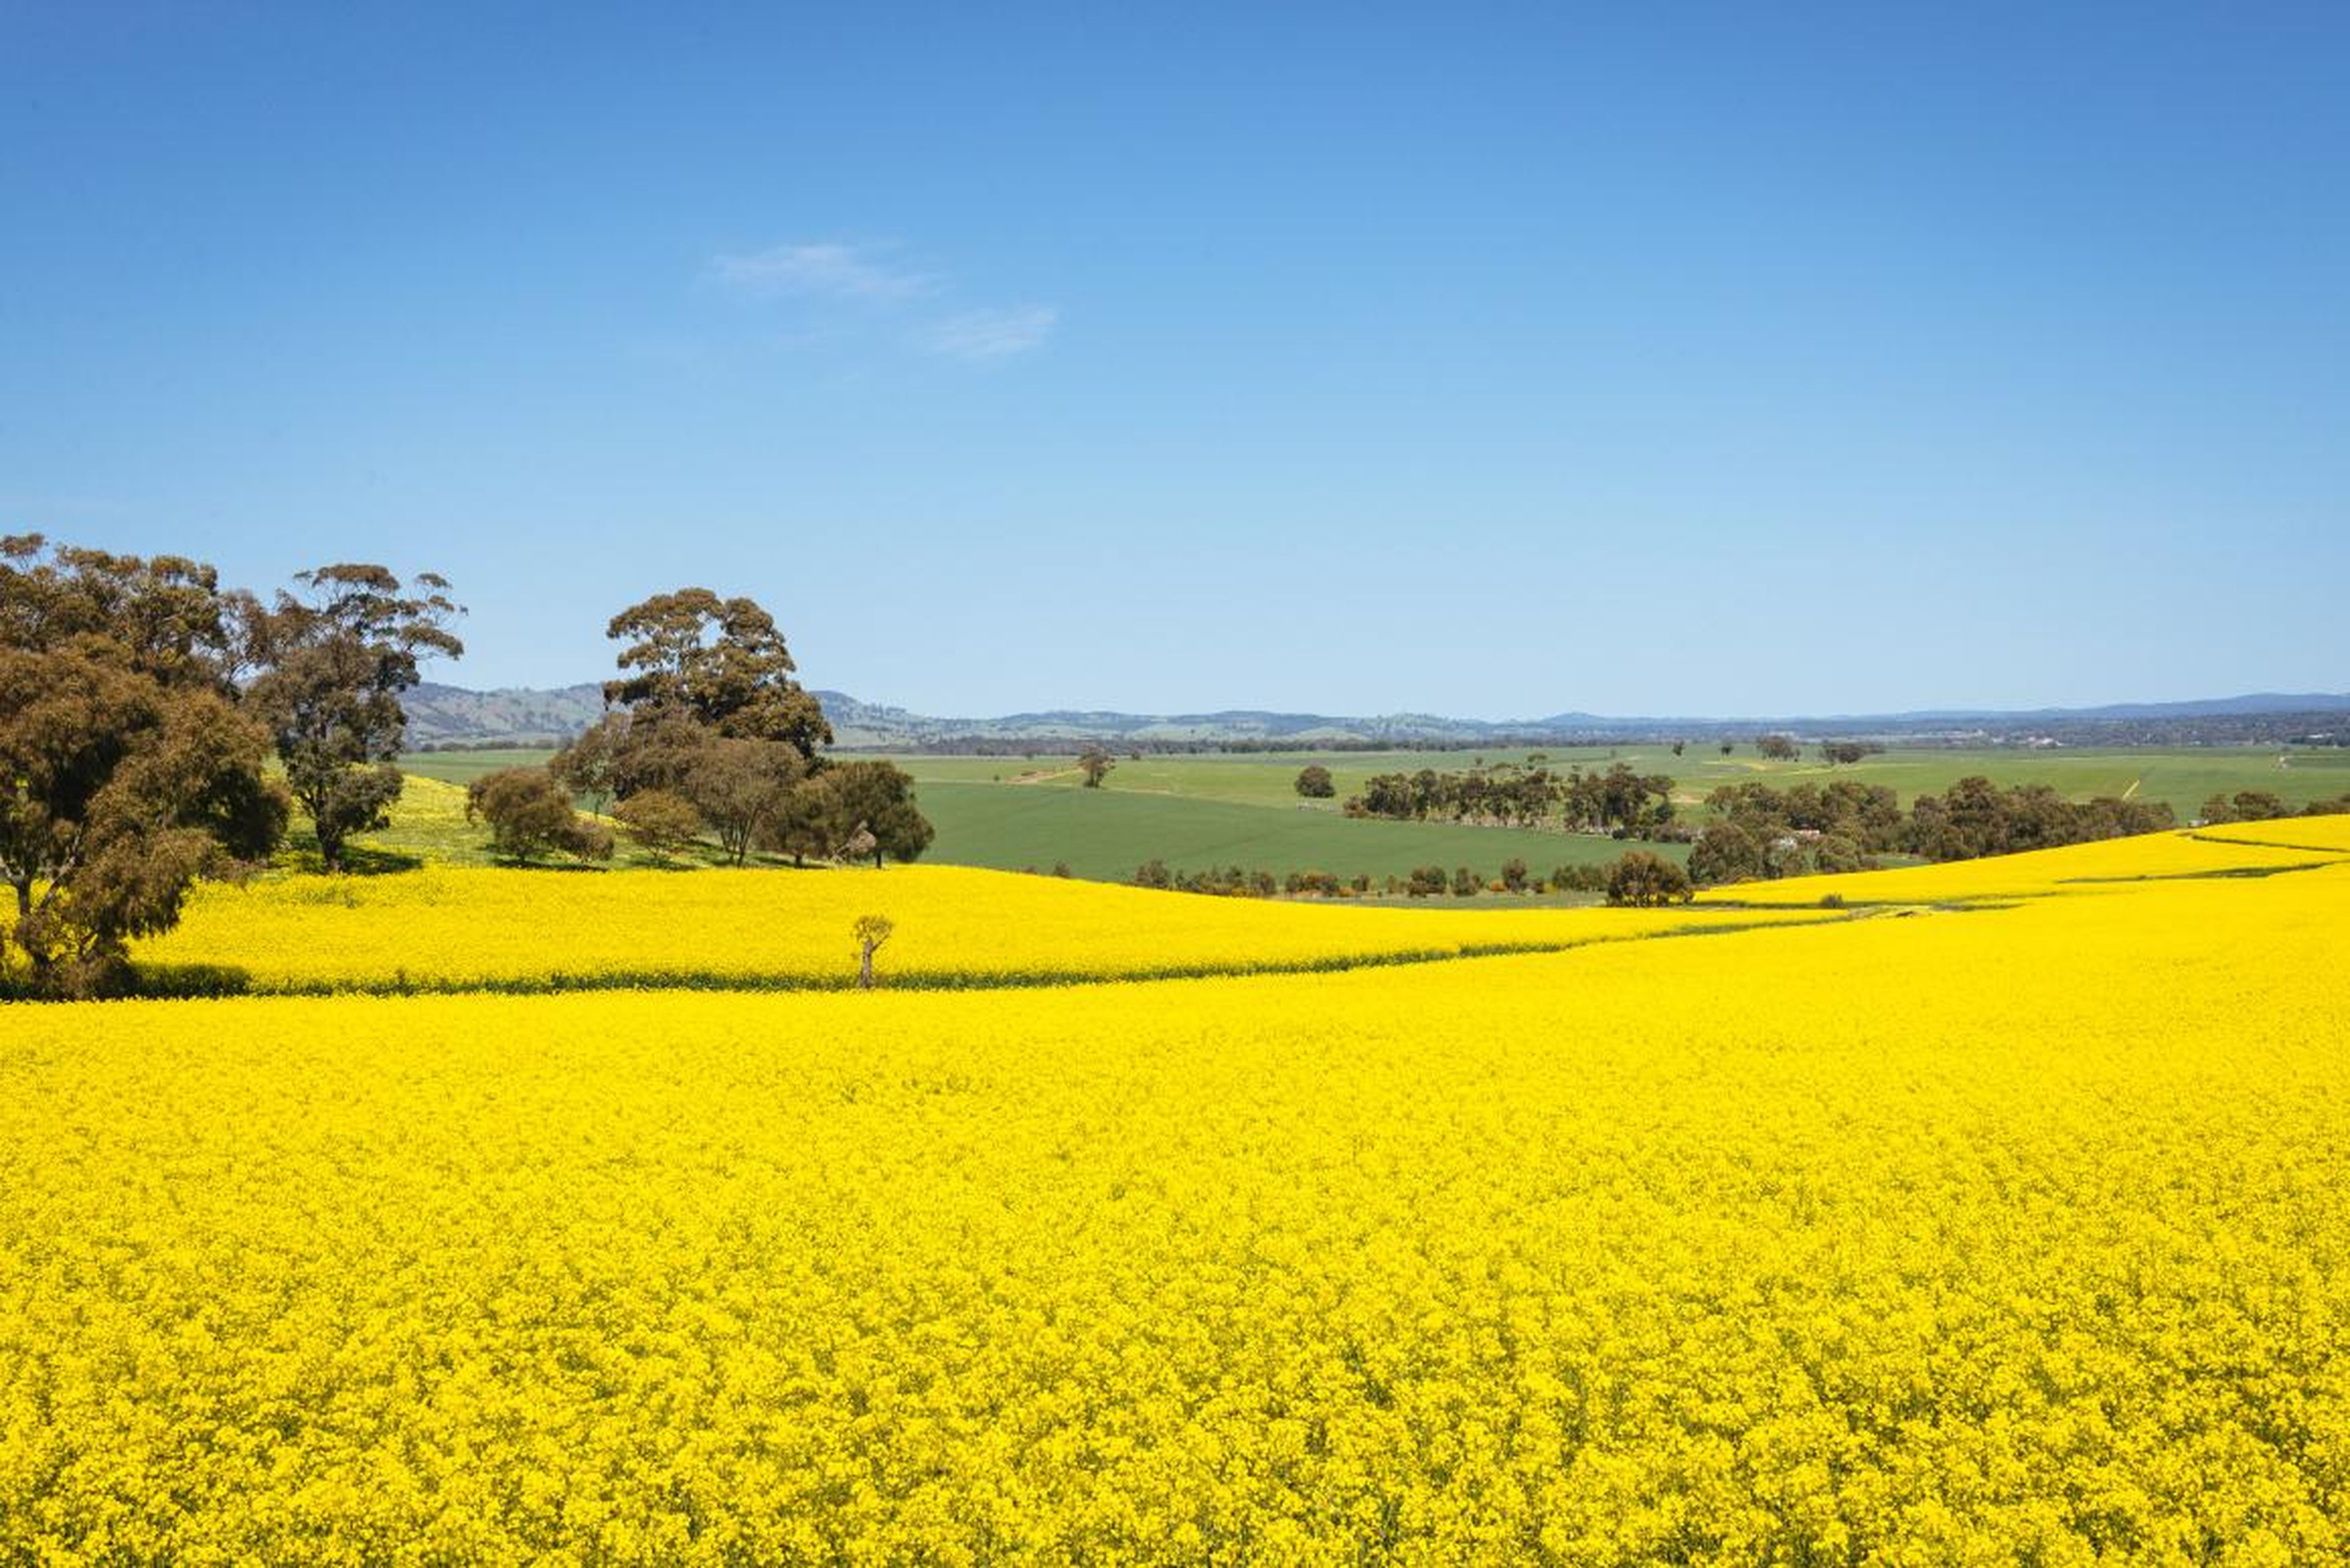 Los cultivos están principalmente en la región central y meridional de Nueva Gales del Sur.